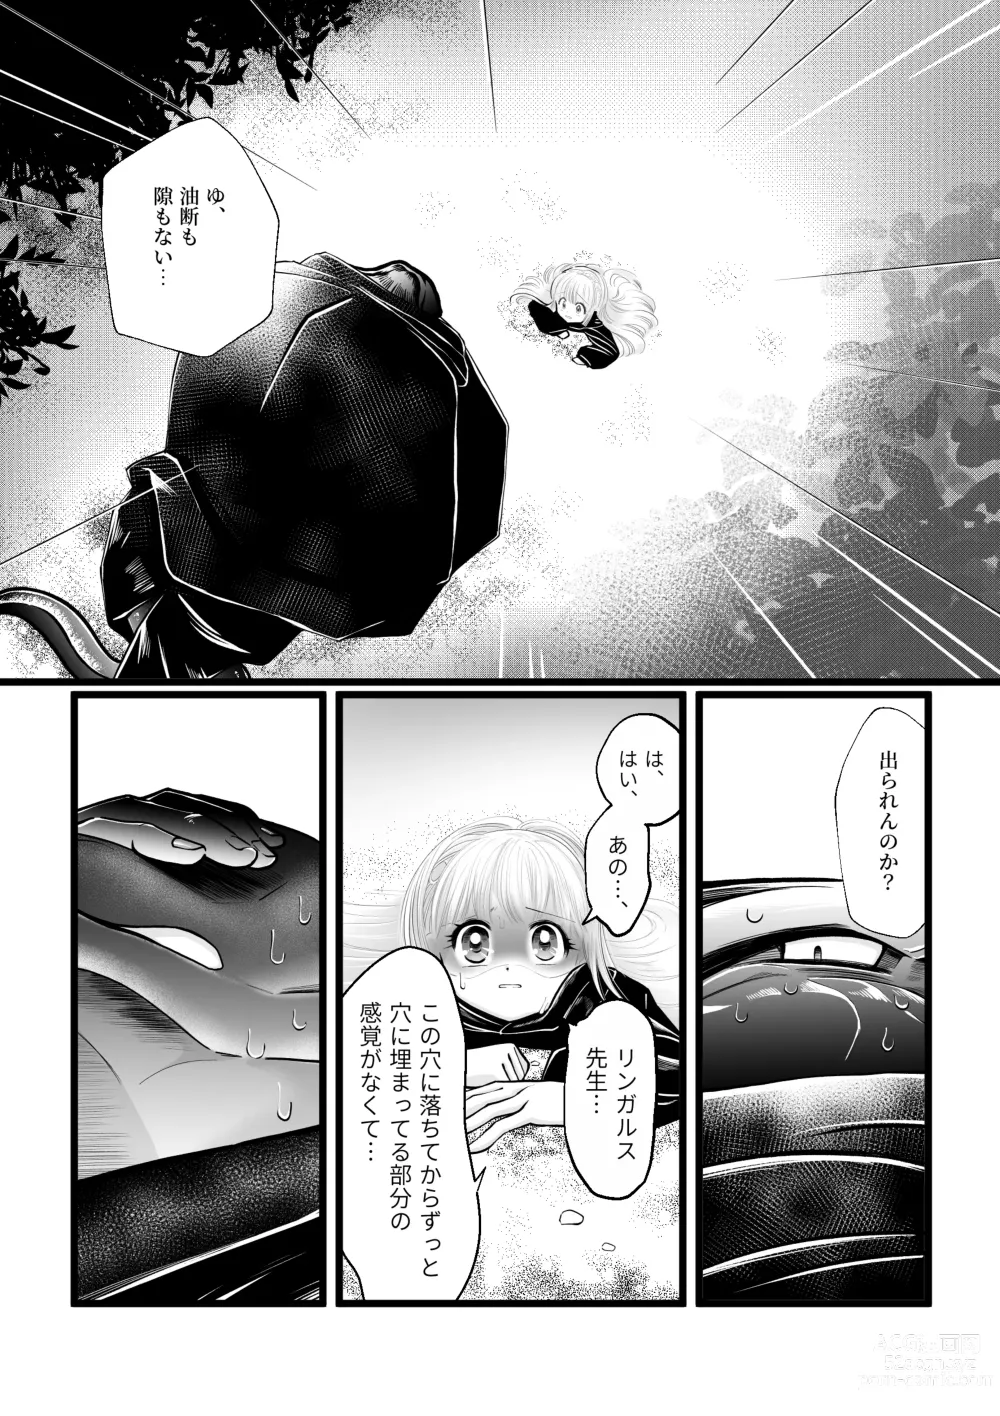 Page 13 of doujinshi Dakatsu no Gotoku Osoreteita Sensei to Kazukazu no Ero Happening ni Mimawarete Kindan no Kankaku Shadan Otoshiana Kouishou Chiryou